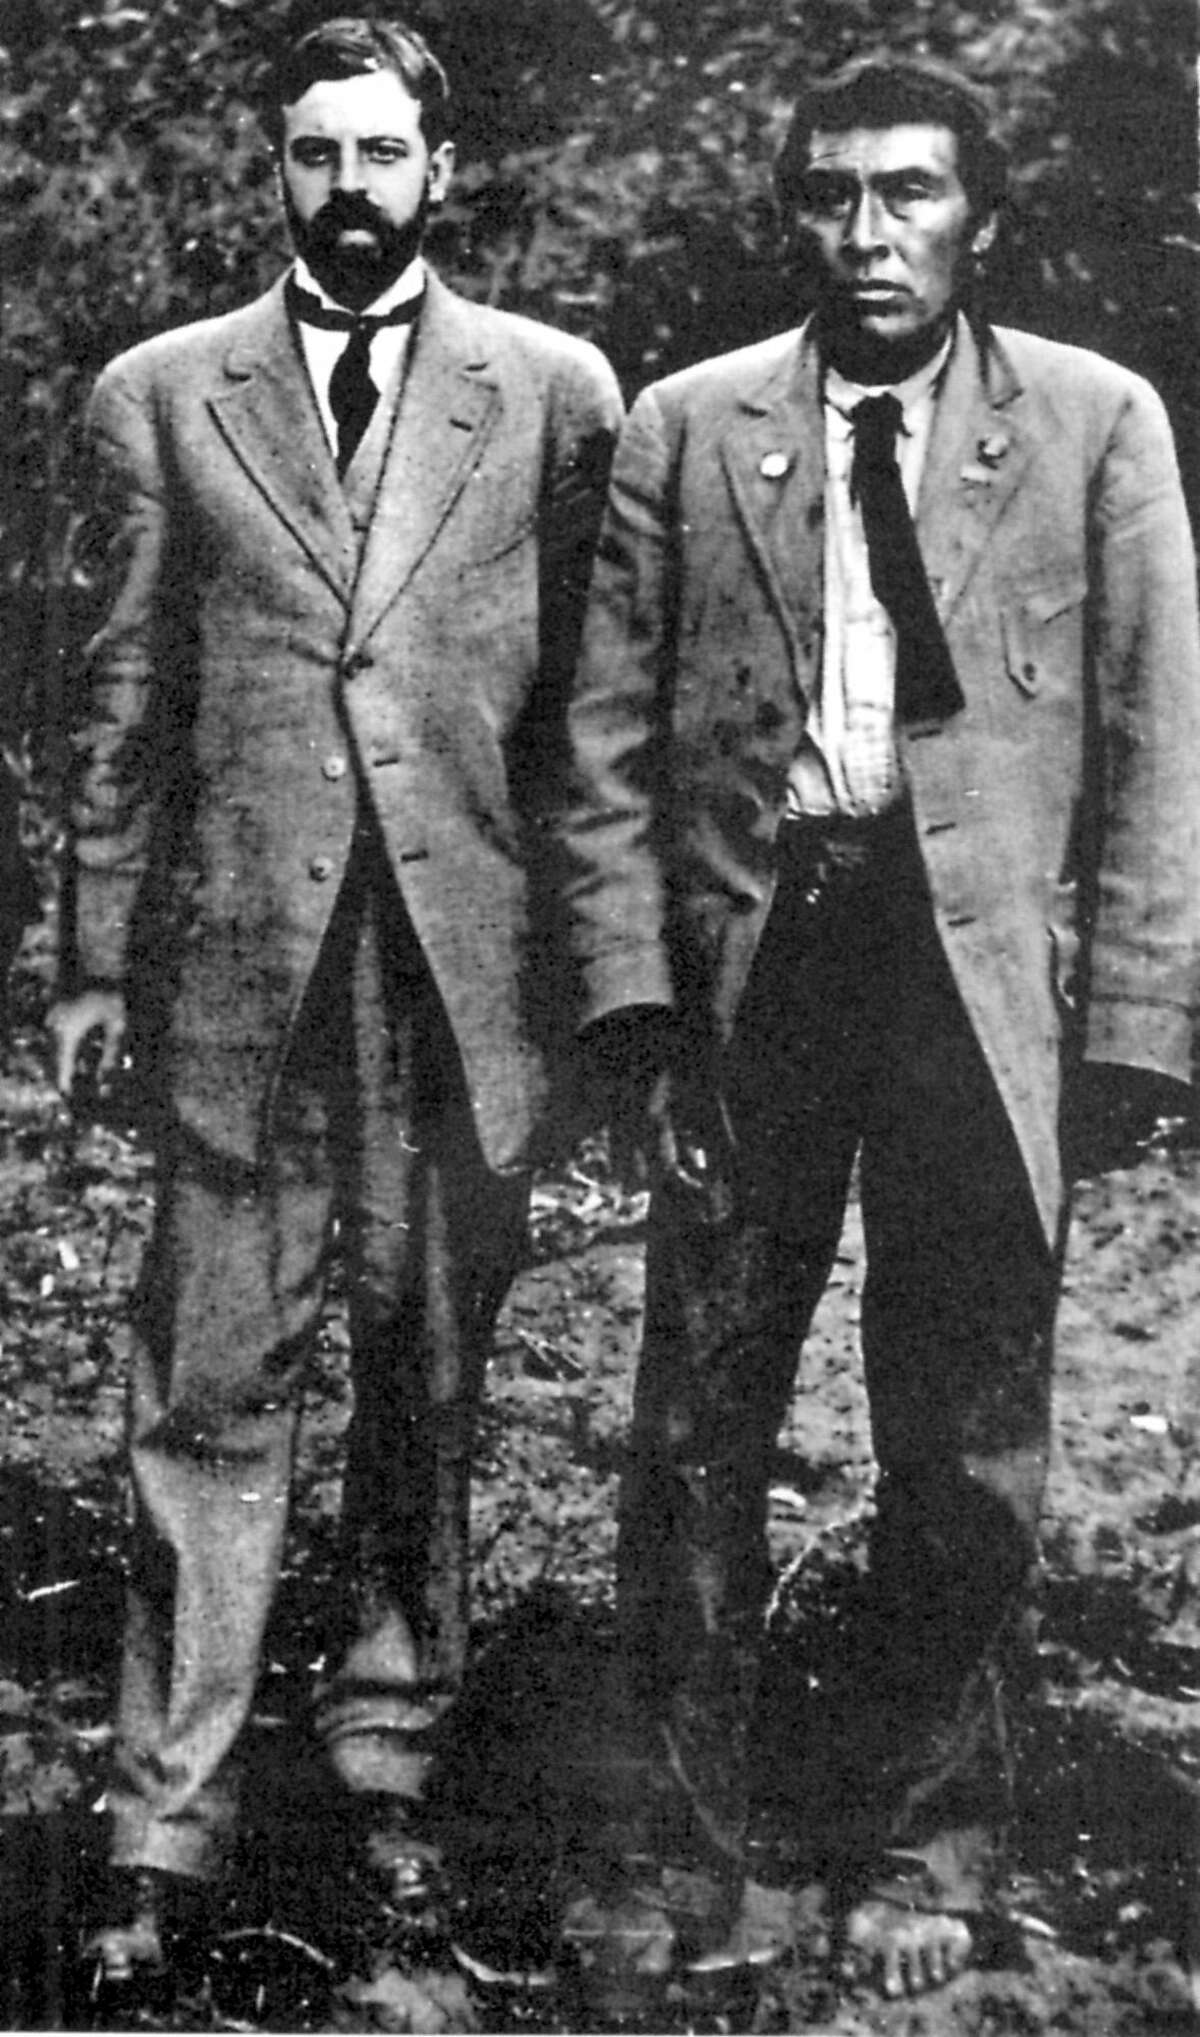 1911年，葛艺豪(左)和Ishi。Ishi，被认为是最后一个加州土著印第安人，1914年在特哈马县。1911年，他在奥罗维尔附近被发现，并被人类学家阿尔弗雷德·葛艺豪收养。